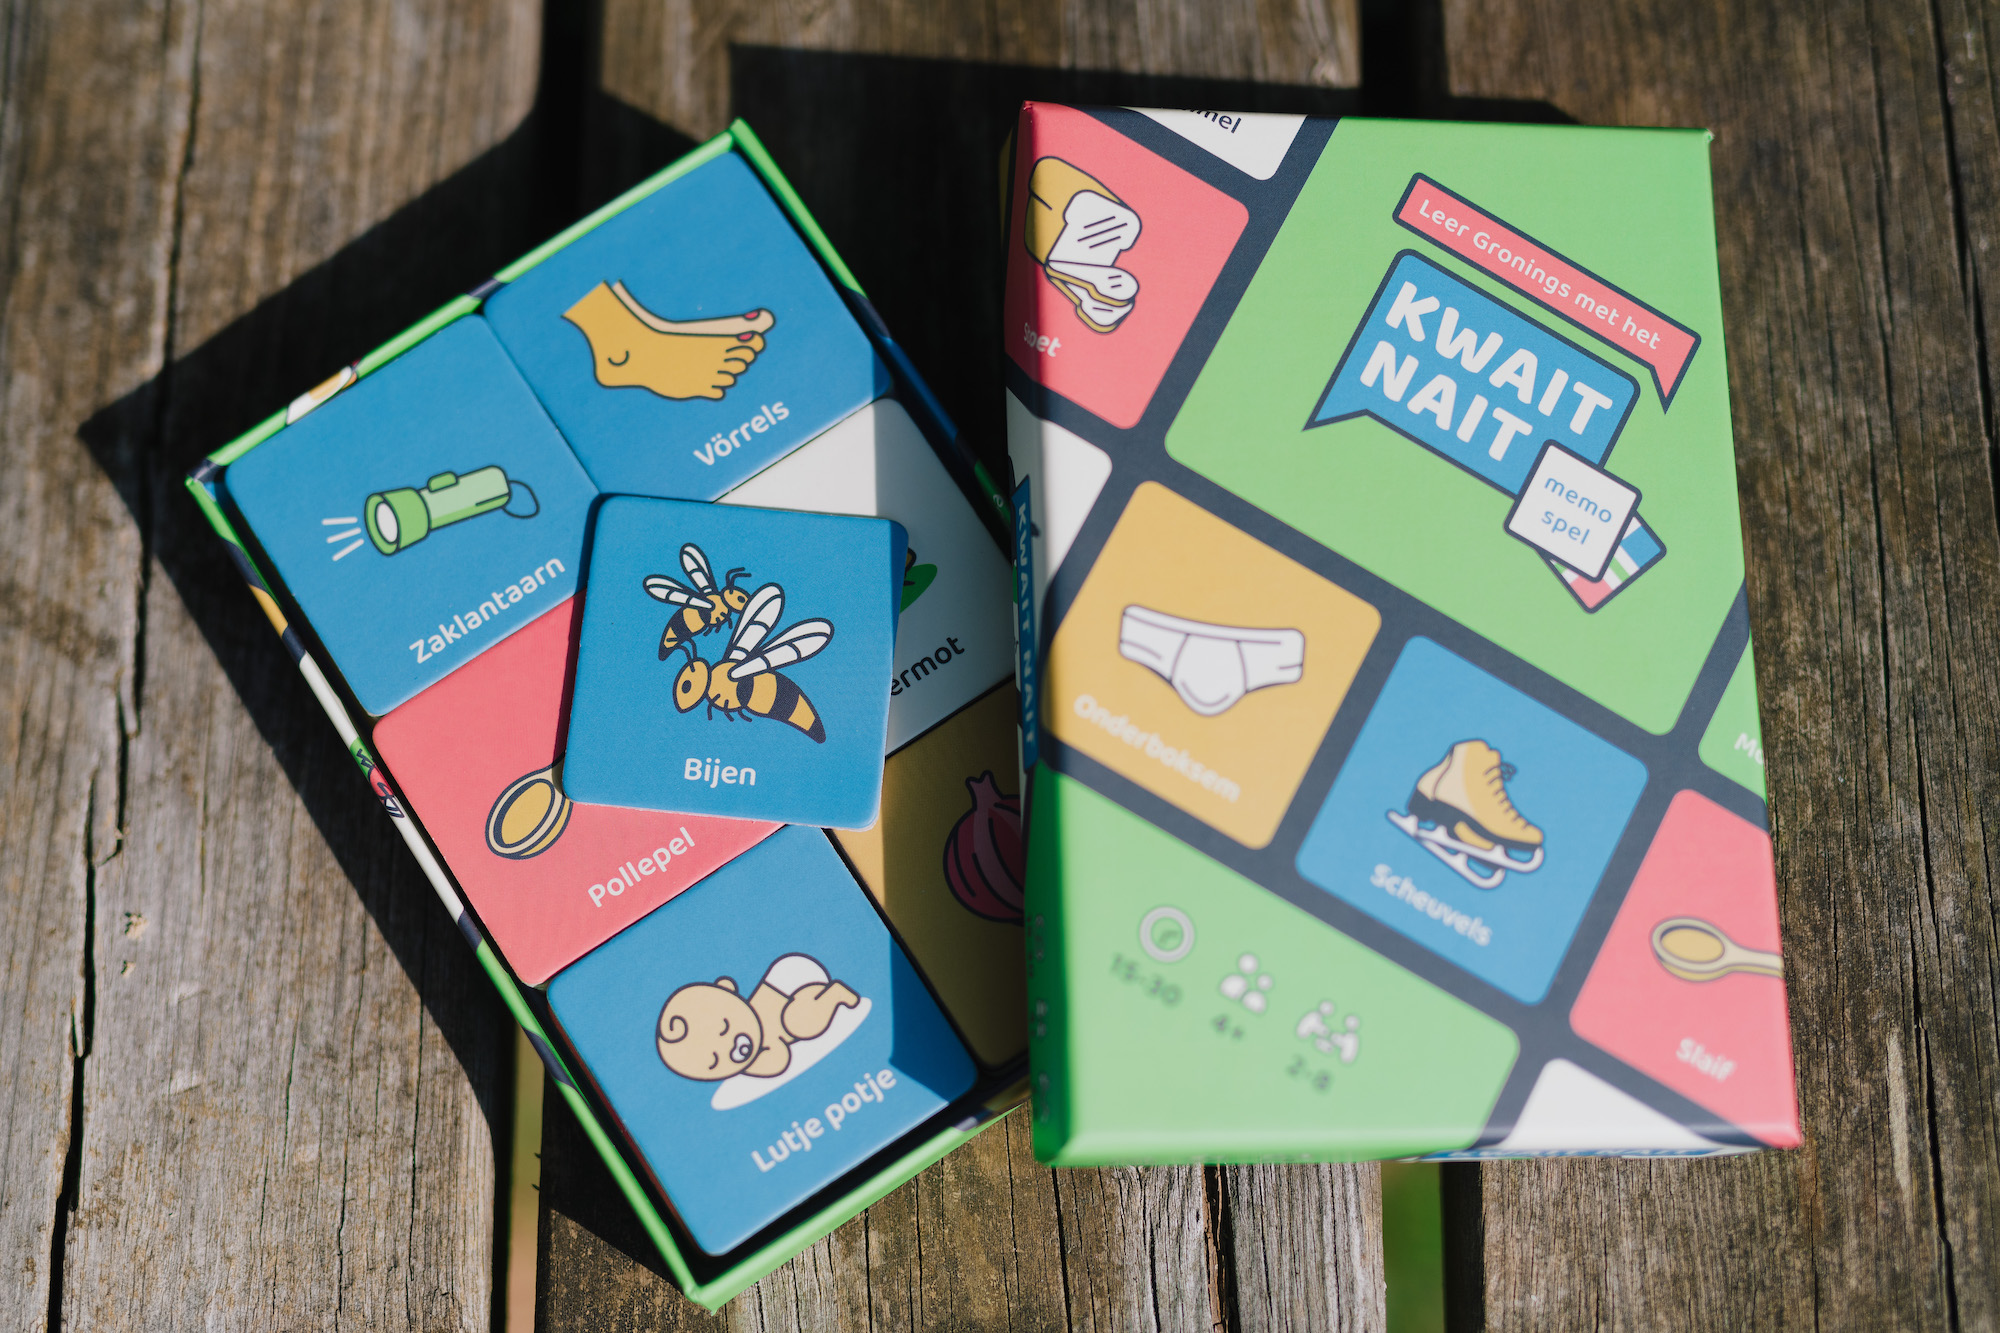 Ontwerp van speldoos en spelkaarten van memoryspel Kwait Nait, door Publiek